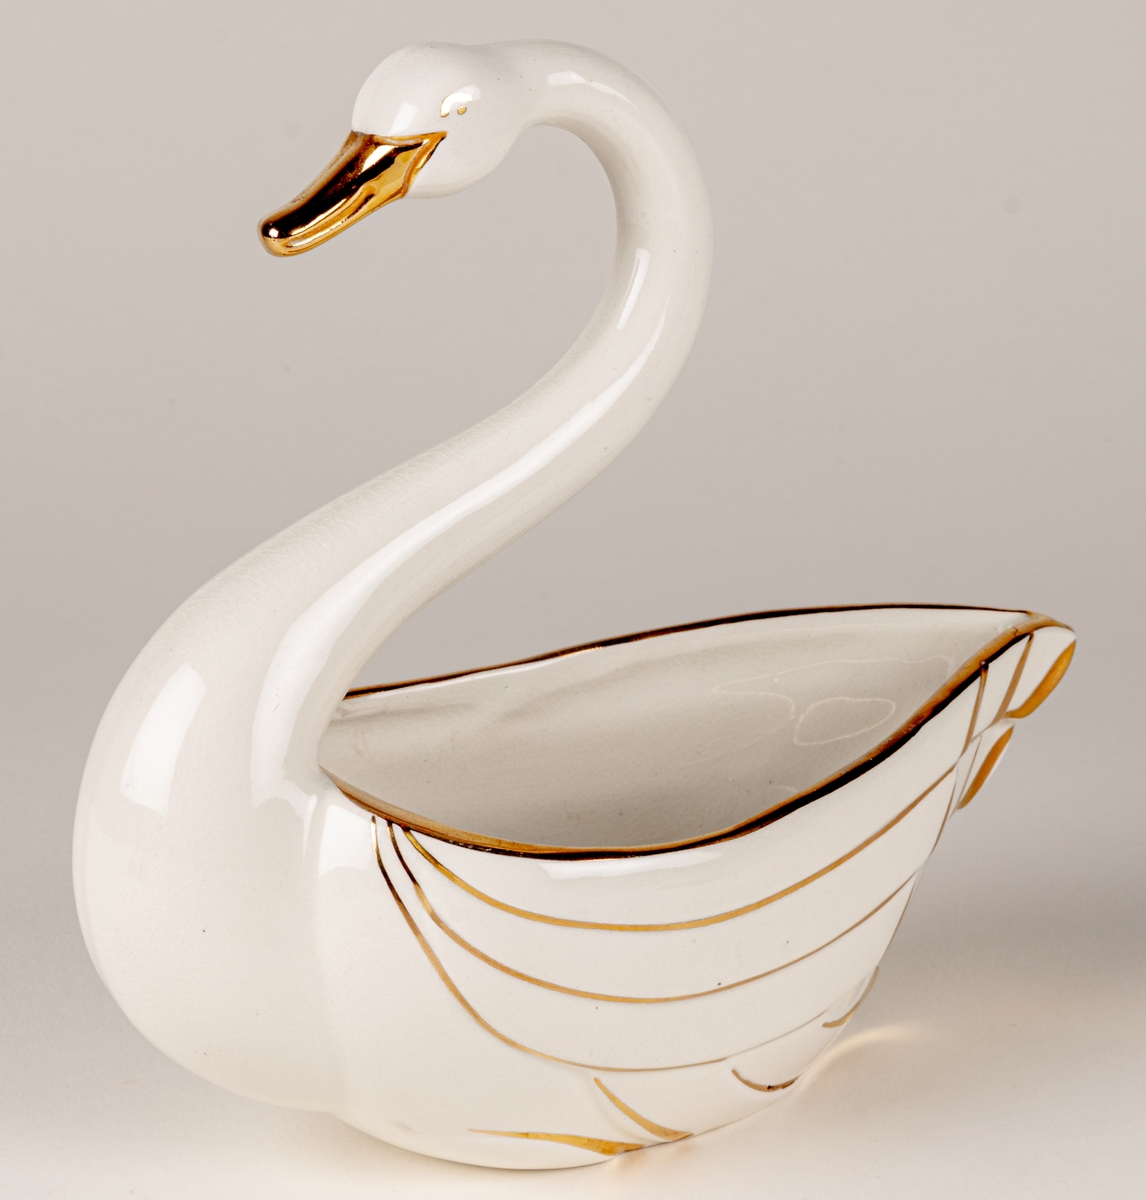 Prydnadsfigur eller skål i form av en svan, flintgods, modell A, dekorserie Aladdin; vit glasyr med handmålat guld. Aladdin producerades under åren 1941-1943. Oklart vem formgivaren är.